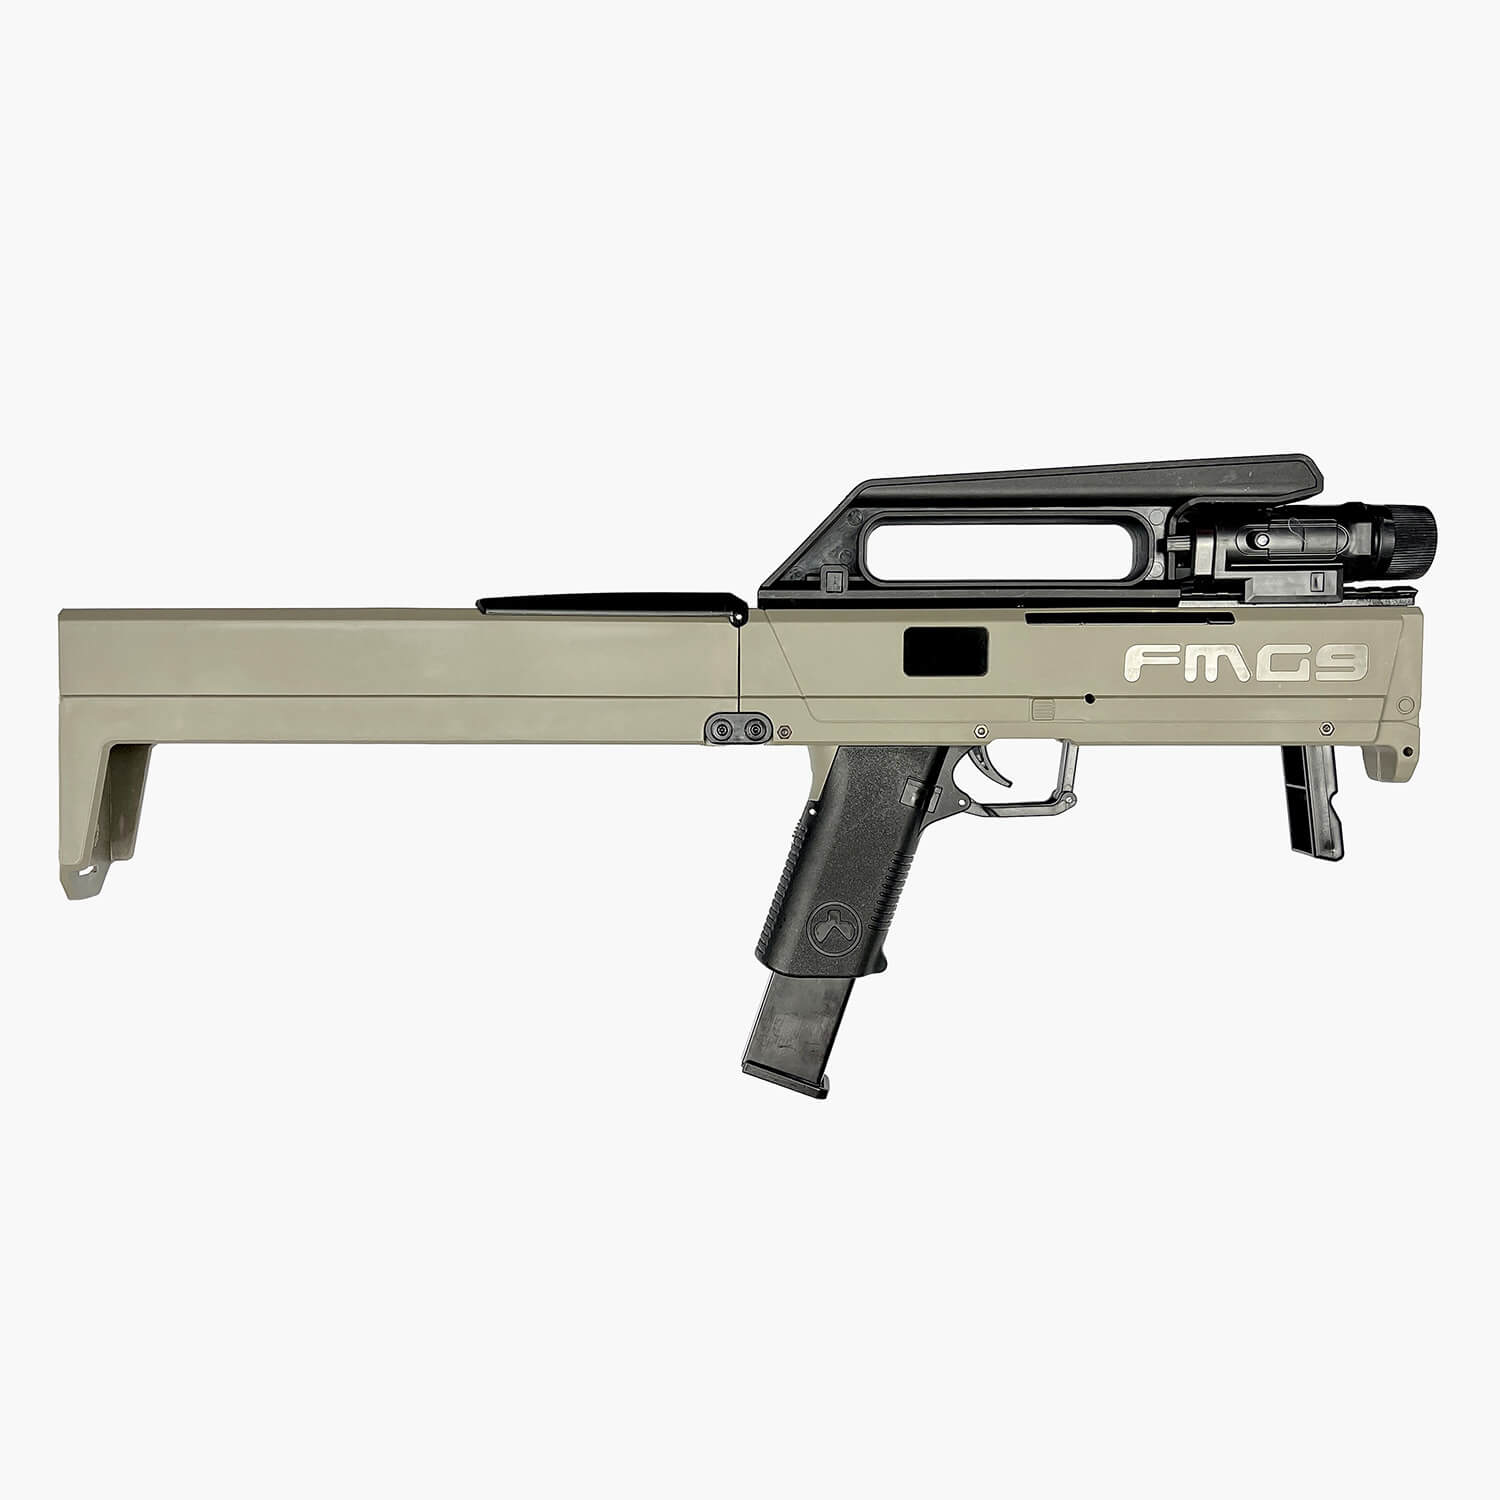 FMG-9 Folding Gel Blaster Submachine Gun